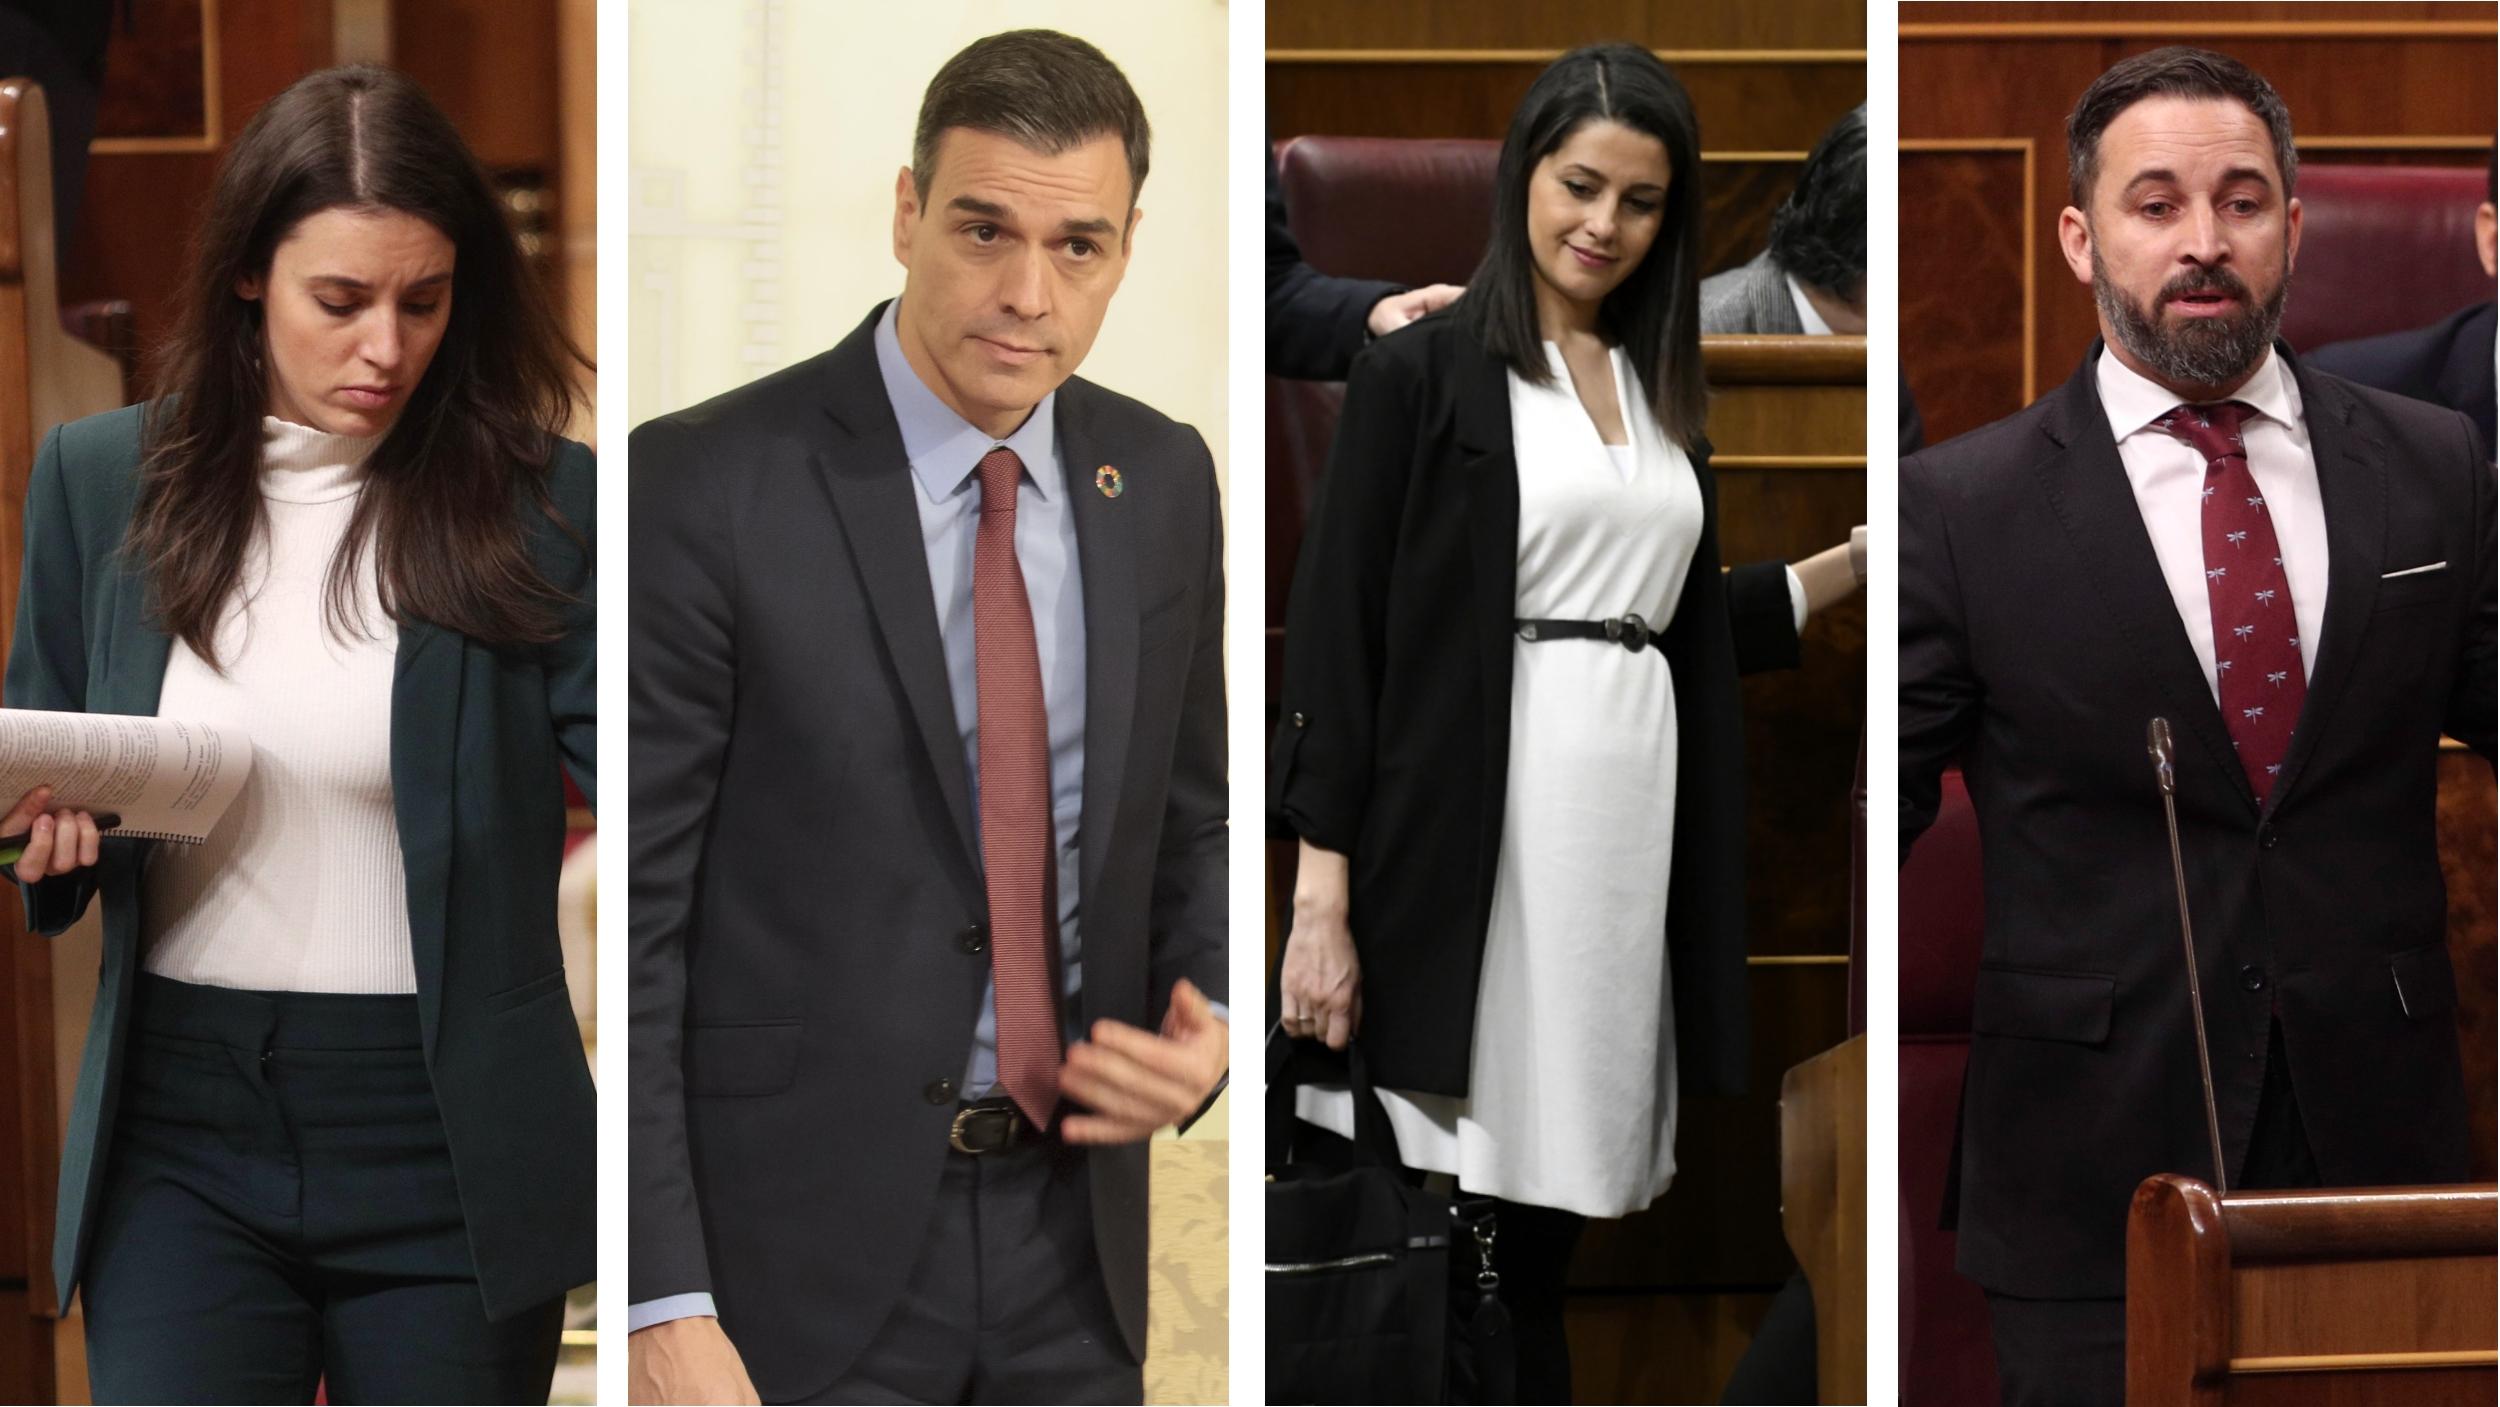 Los políticos mas sexys según los españoles: Inés Arrimadas, Pedro Sánchez, Irene Montero y Santiago Abascal